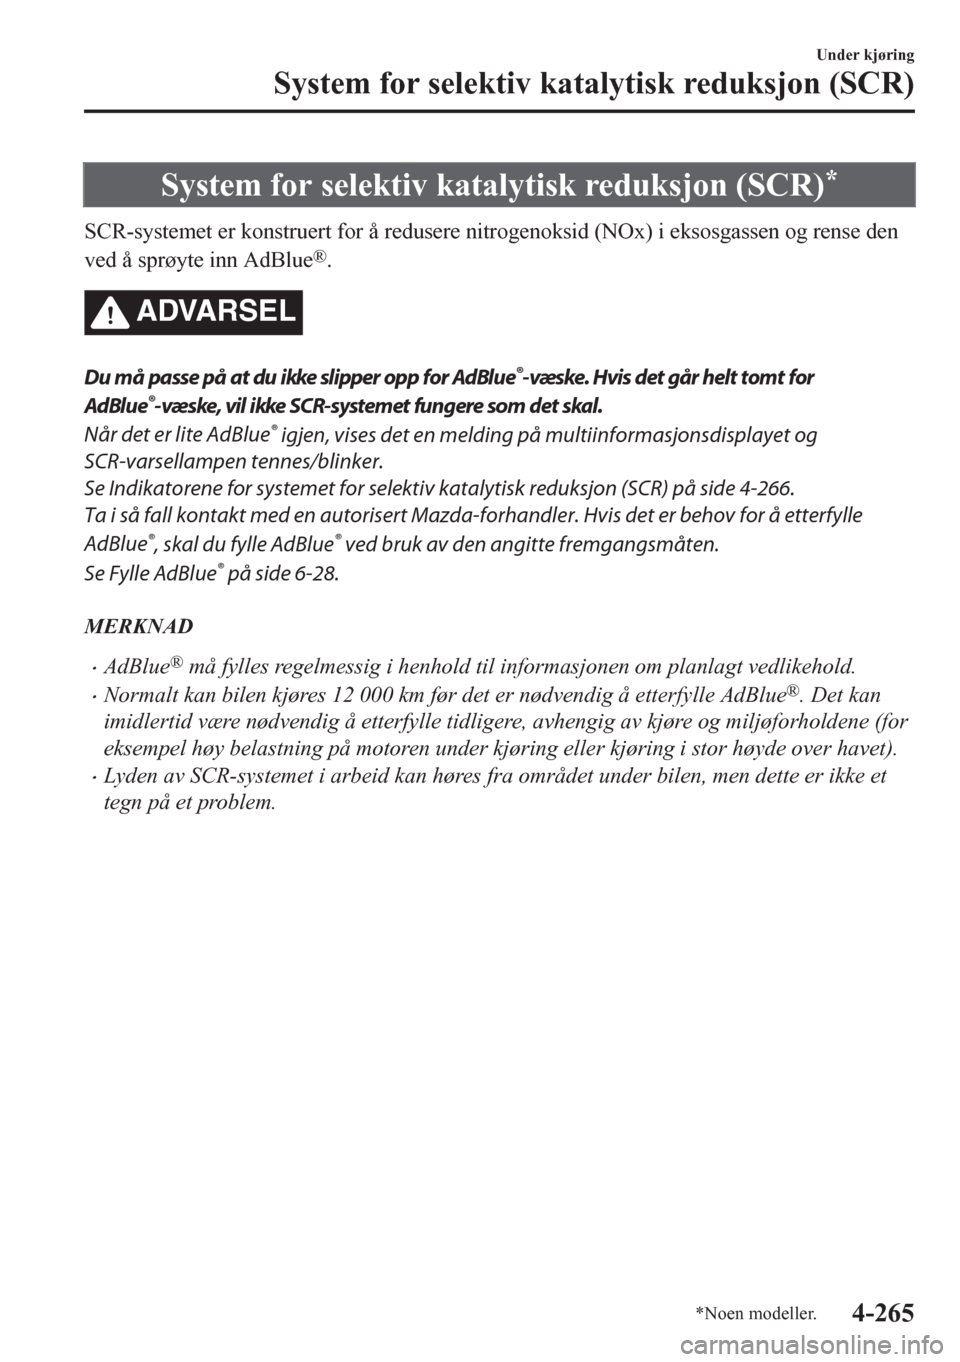 MAZDA MODEL CX-5 2018  Brukerhåndbok (in Norwegian) System for selektiv katalytisk reduksjon (SCR)*
SCR-systemet er konstruert for å redusere nitrogenoksid (NOx) i eksosgassen og rense den
ved å sprøyte inn AdBlue
®.
ADVARSEL
Du må passe på at du